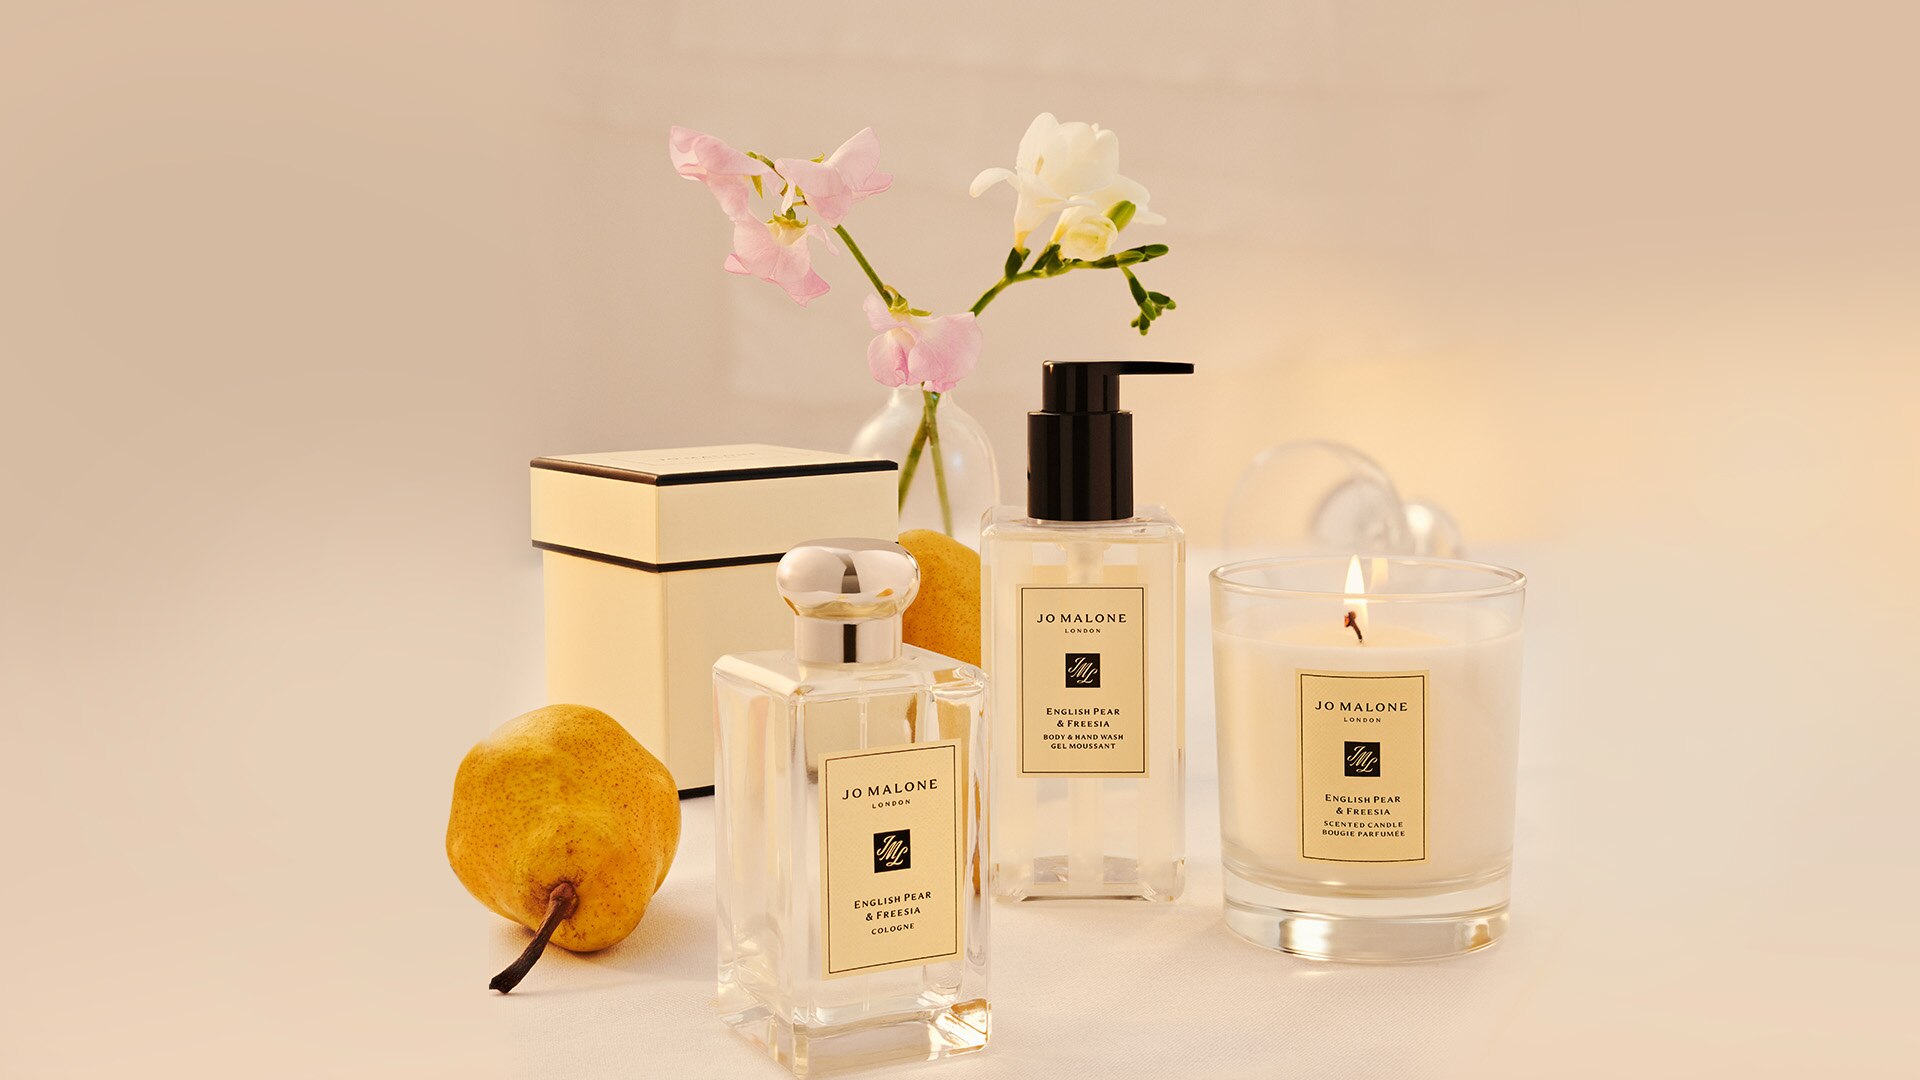 English Pear & Freesia toujours. Découvrez nos parfums les plus populaires.